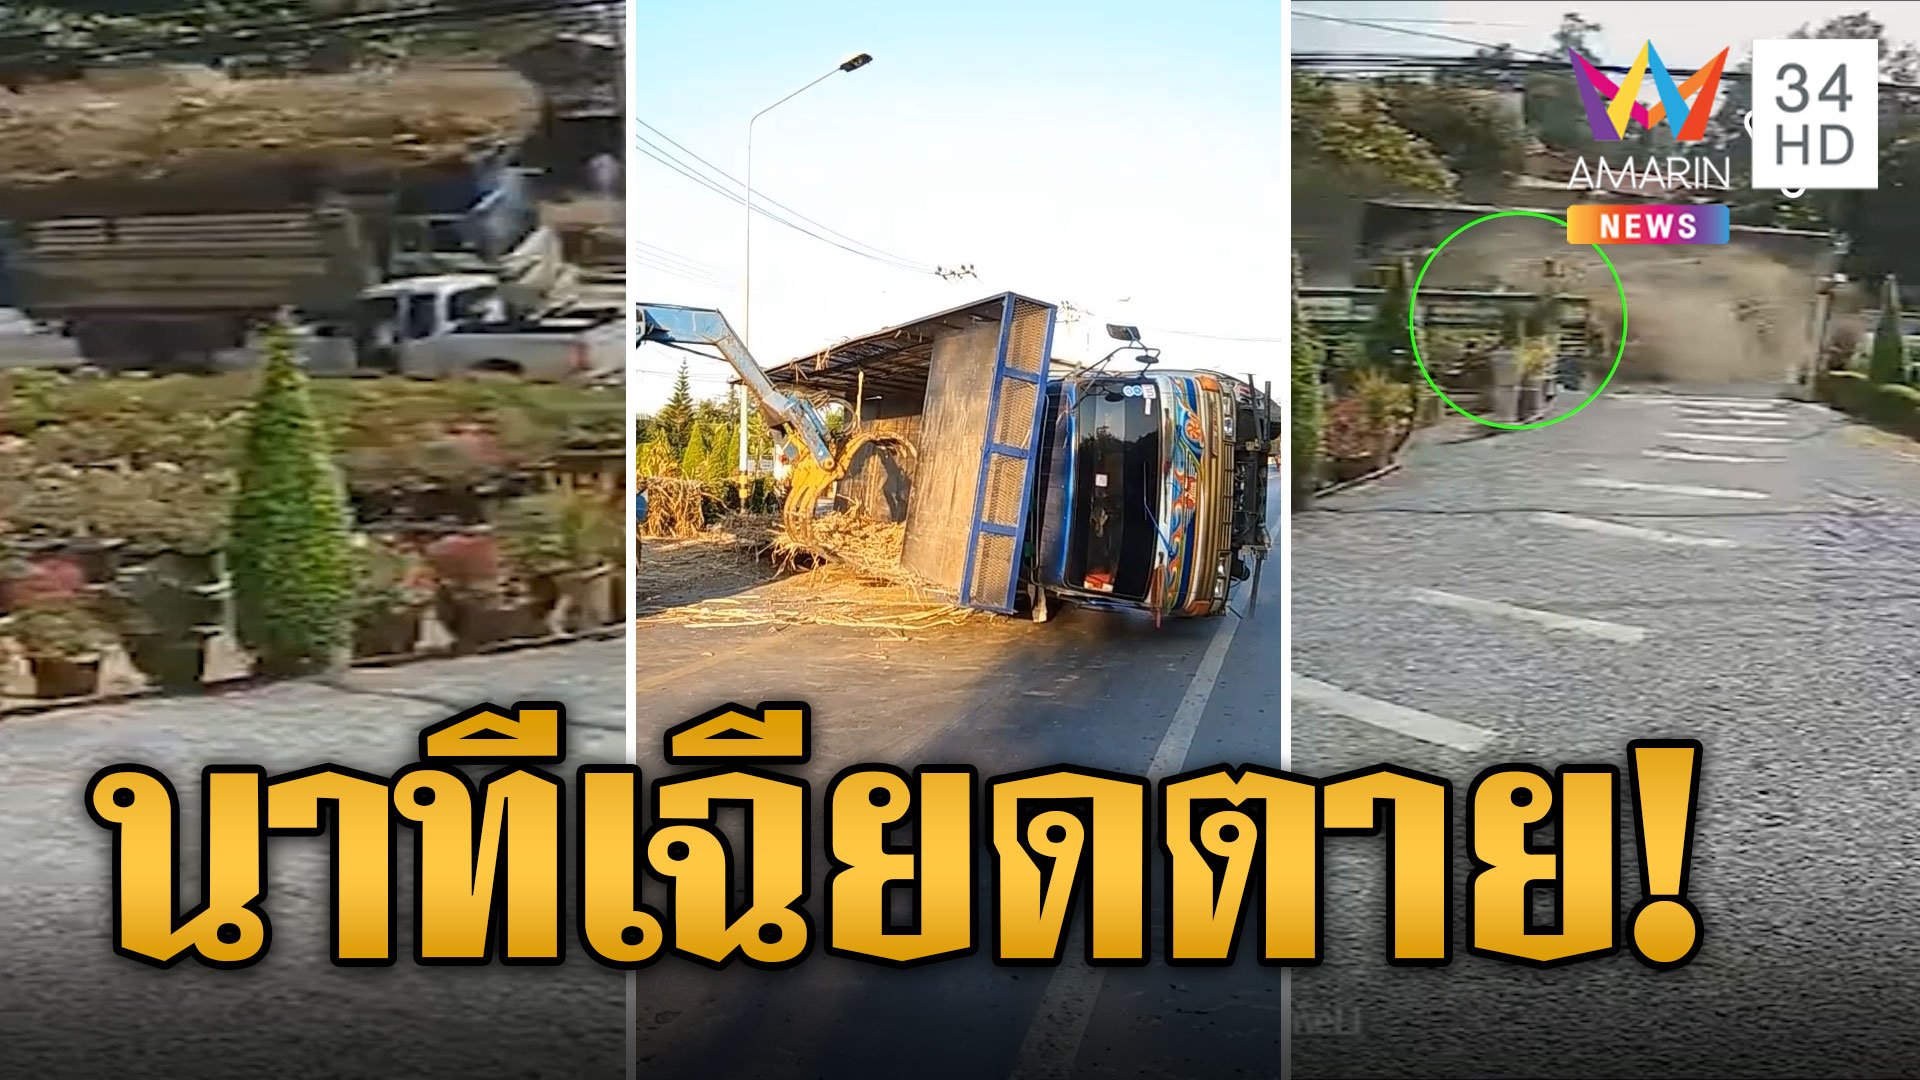 นาทีระทึก! รถบรรทุกอ้อยเทกระจาด เฉียดหลังคากระบะ | ข่าวเที่ยงอมรินทร์ | 13 ม.ค. 67 | AMARIN TVHD34